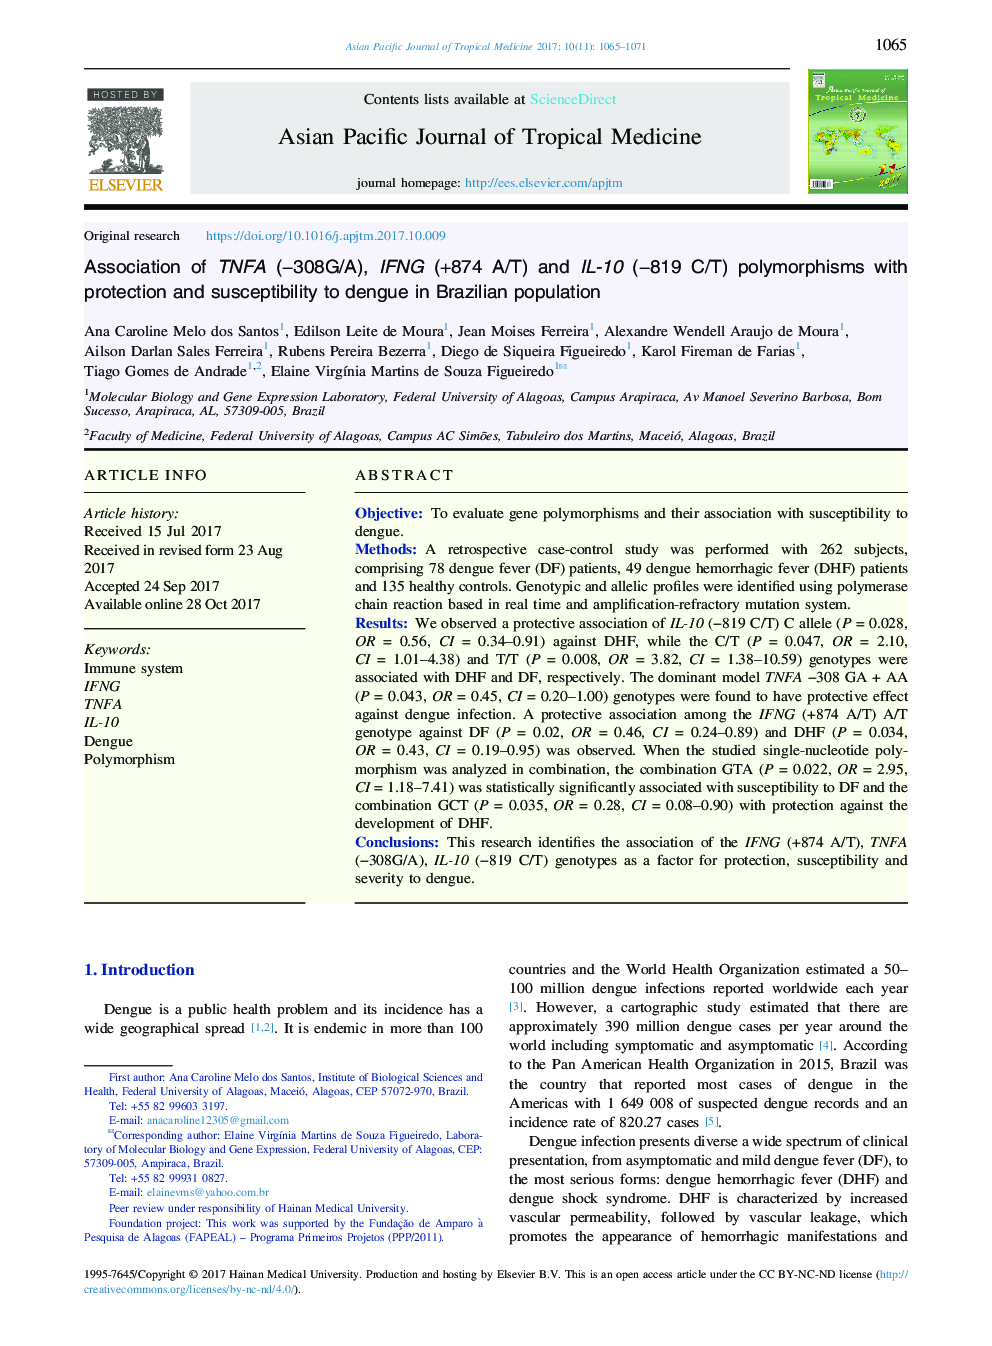 Association of TNFA (â308G/A), IFNG (+874 A/T) and IL-10 (â819Â C/T) polymorphisms with protection and susceptibility to dengue in Brazilian population